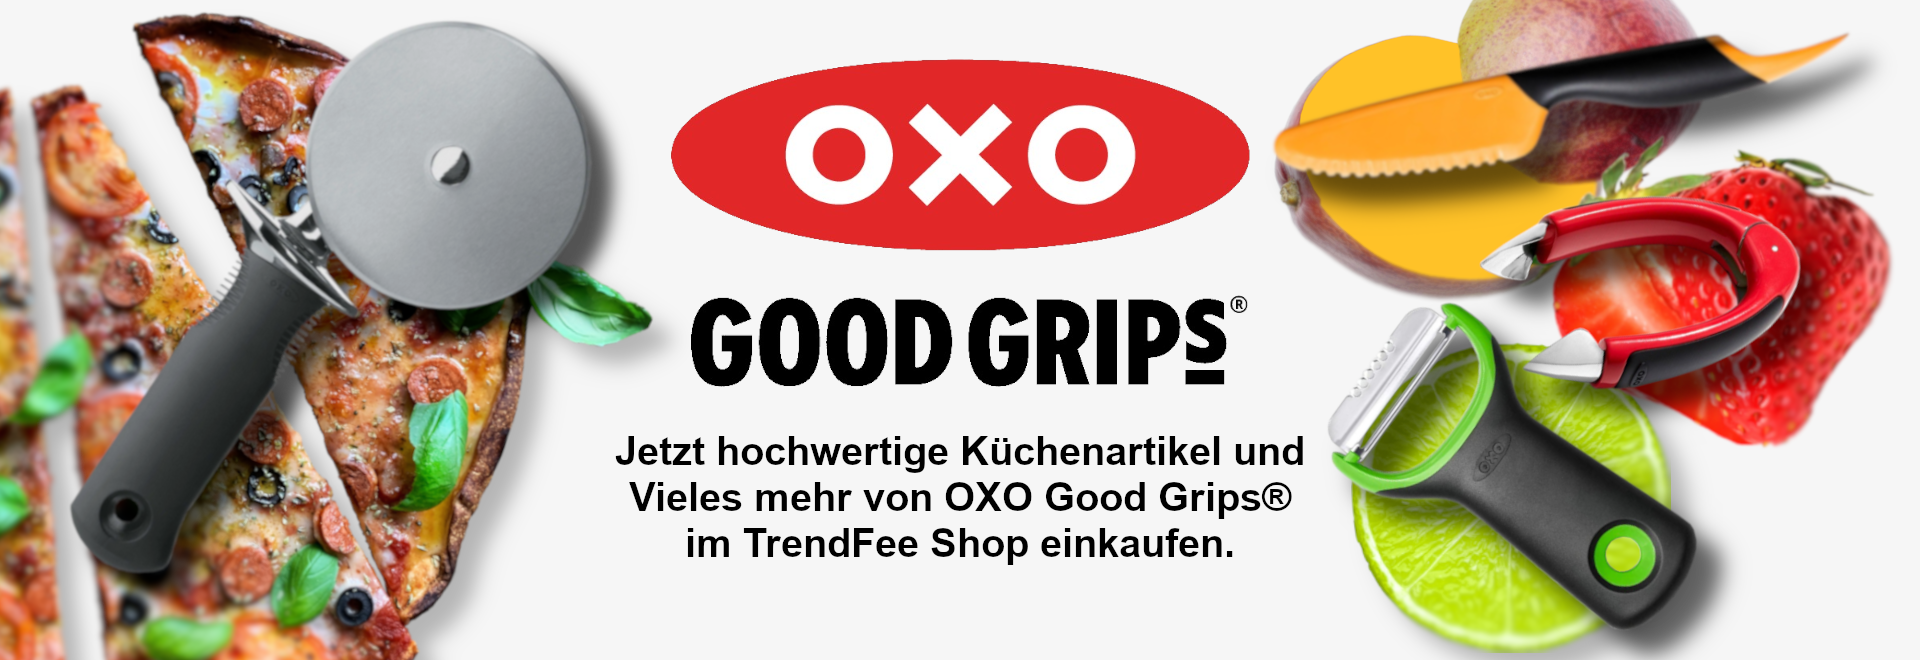 oxo-good-grips-slider-mango